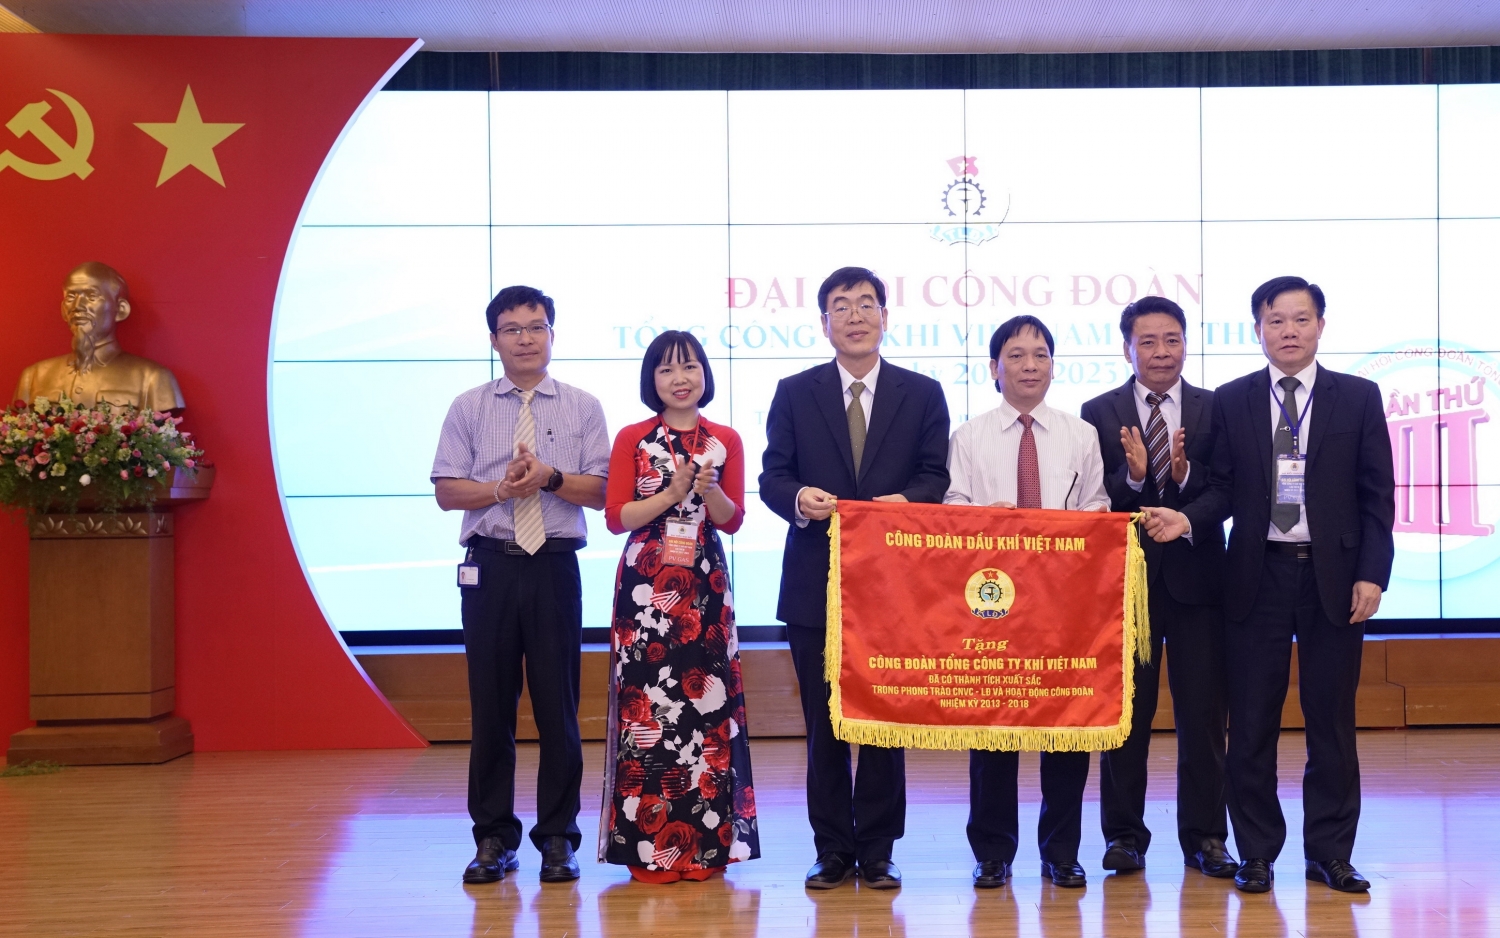 ại Đại hội nhiệm kỳ 2017-2023, Công đoàn PV GAS vinh dự nhận Cờ Thi đua đơn vị xuất sắc của Công đoàn Dầu khí Việt Nam